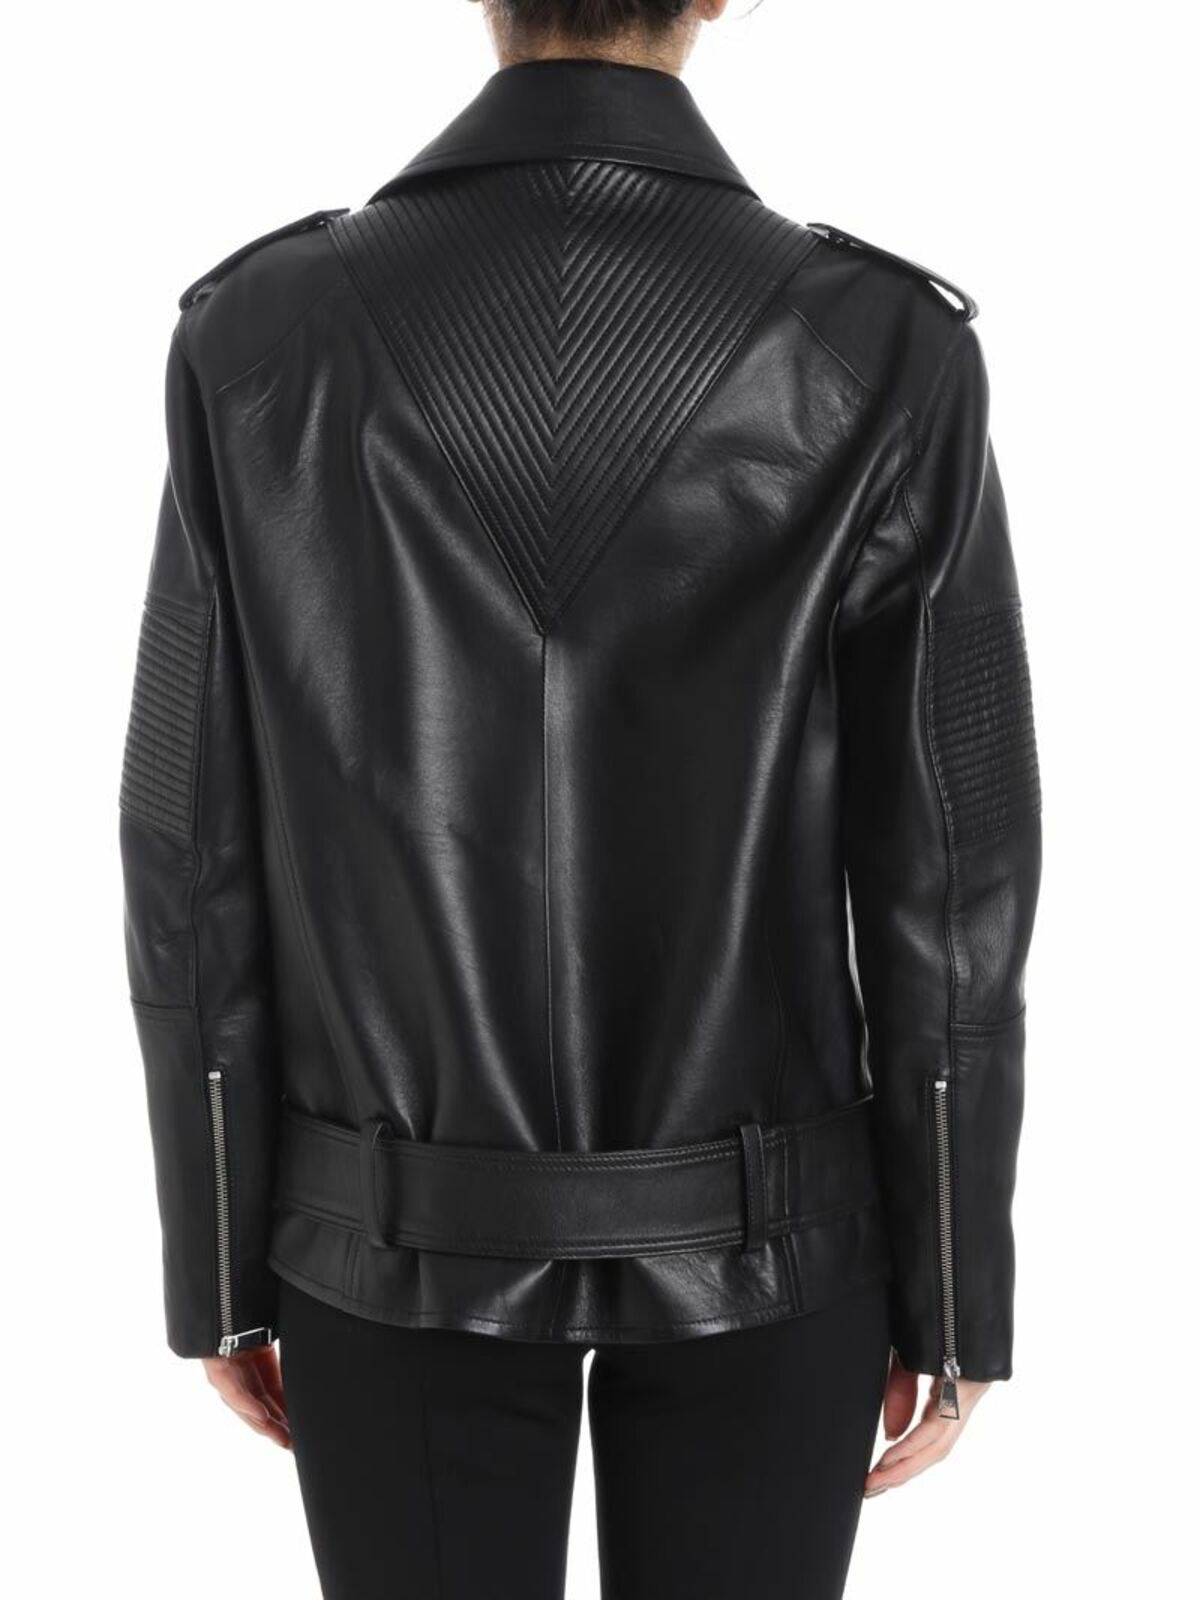 Leather jacket Lagerfeld Leather jacket - 81KW1902999 iKRIX.com